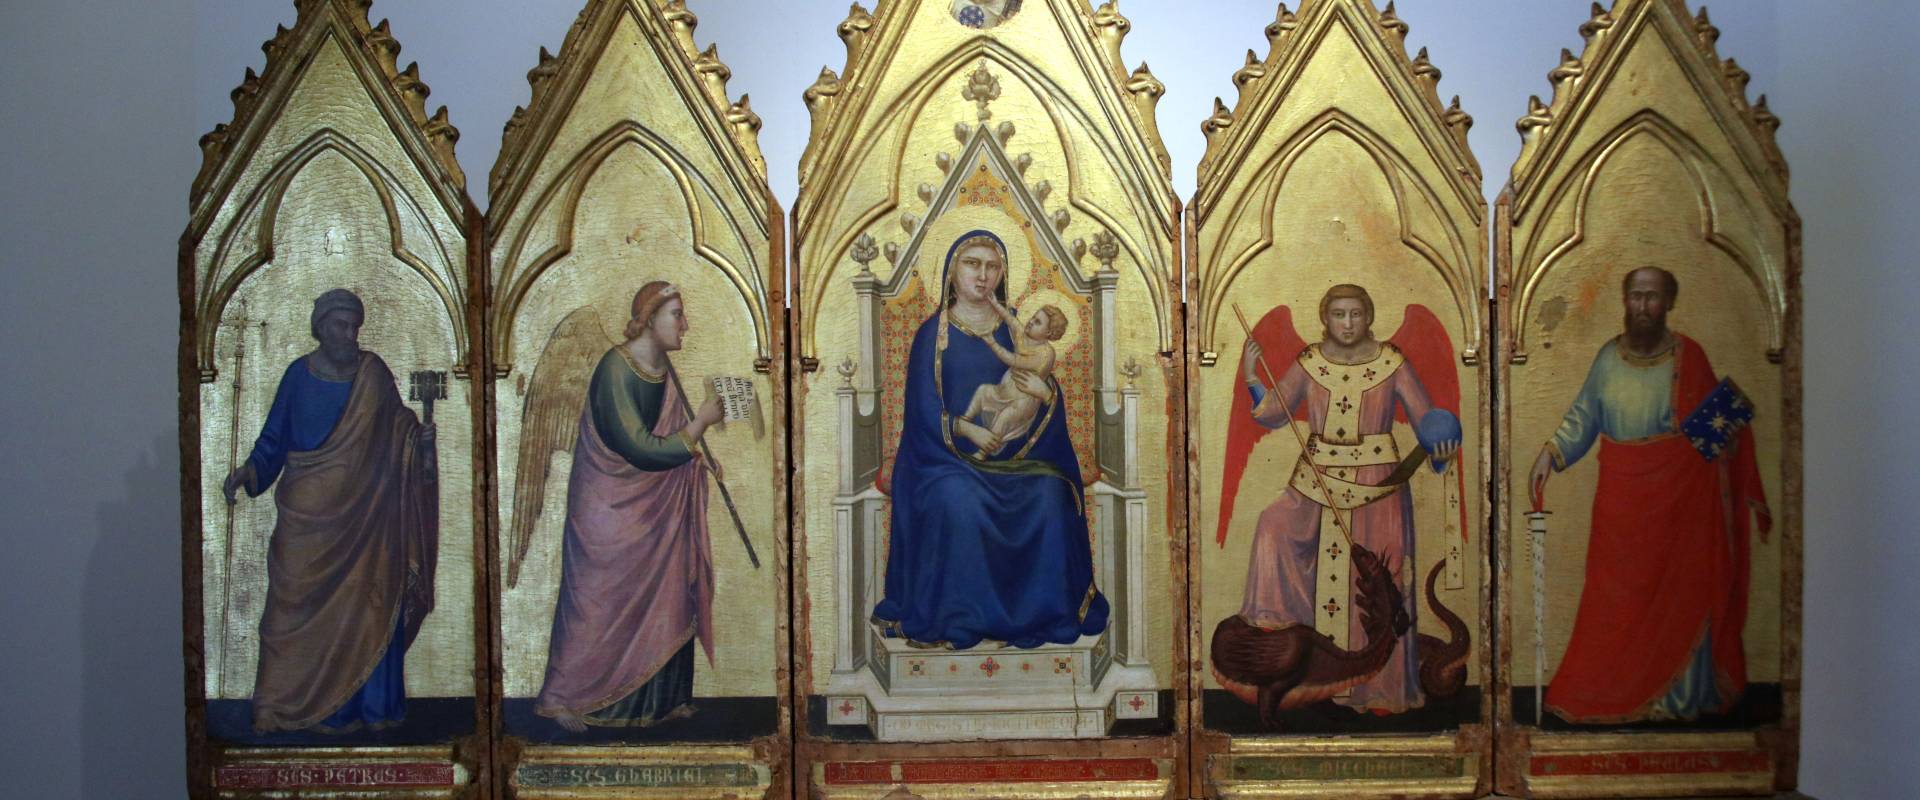 Giotto, Polittico, 1330 circa foto di 